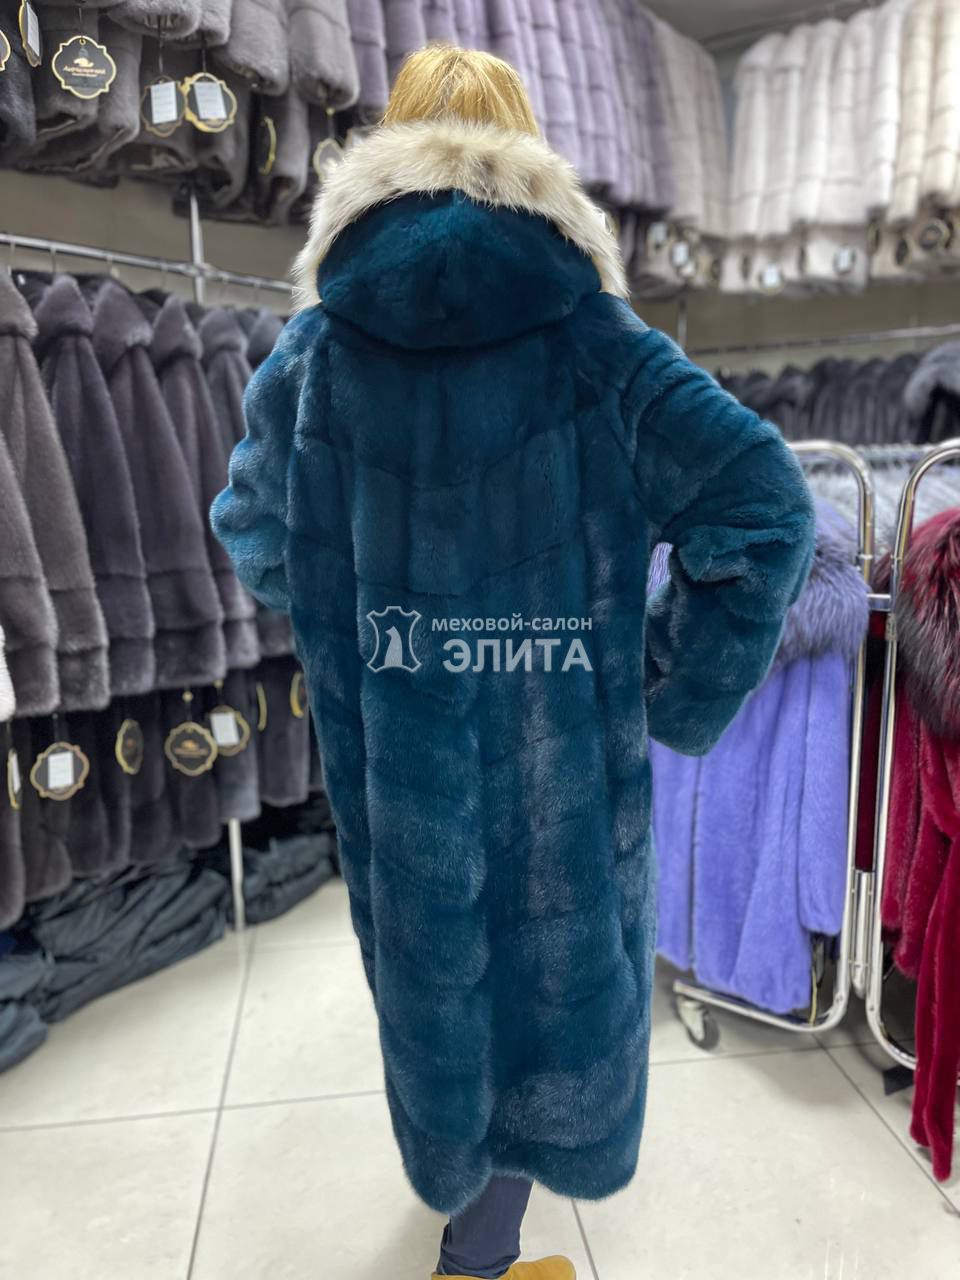 Пальто из норки S-80619 р-р 46-52, цена 190200 рублей в интернет-магазине кожи и меха ЭЛИТА. Вид 2